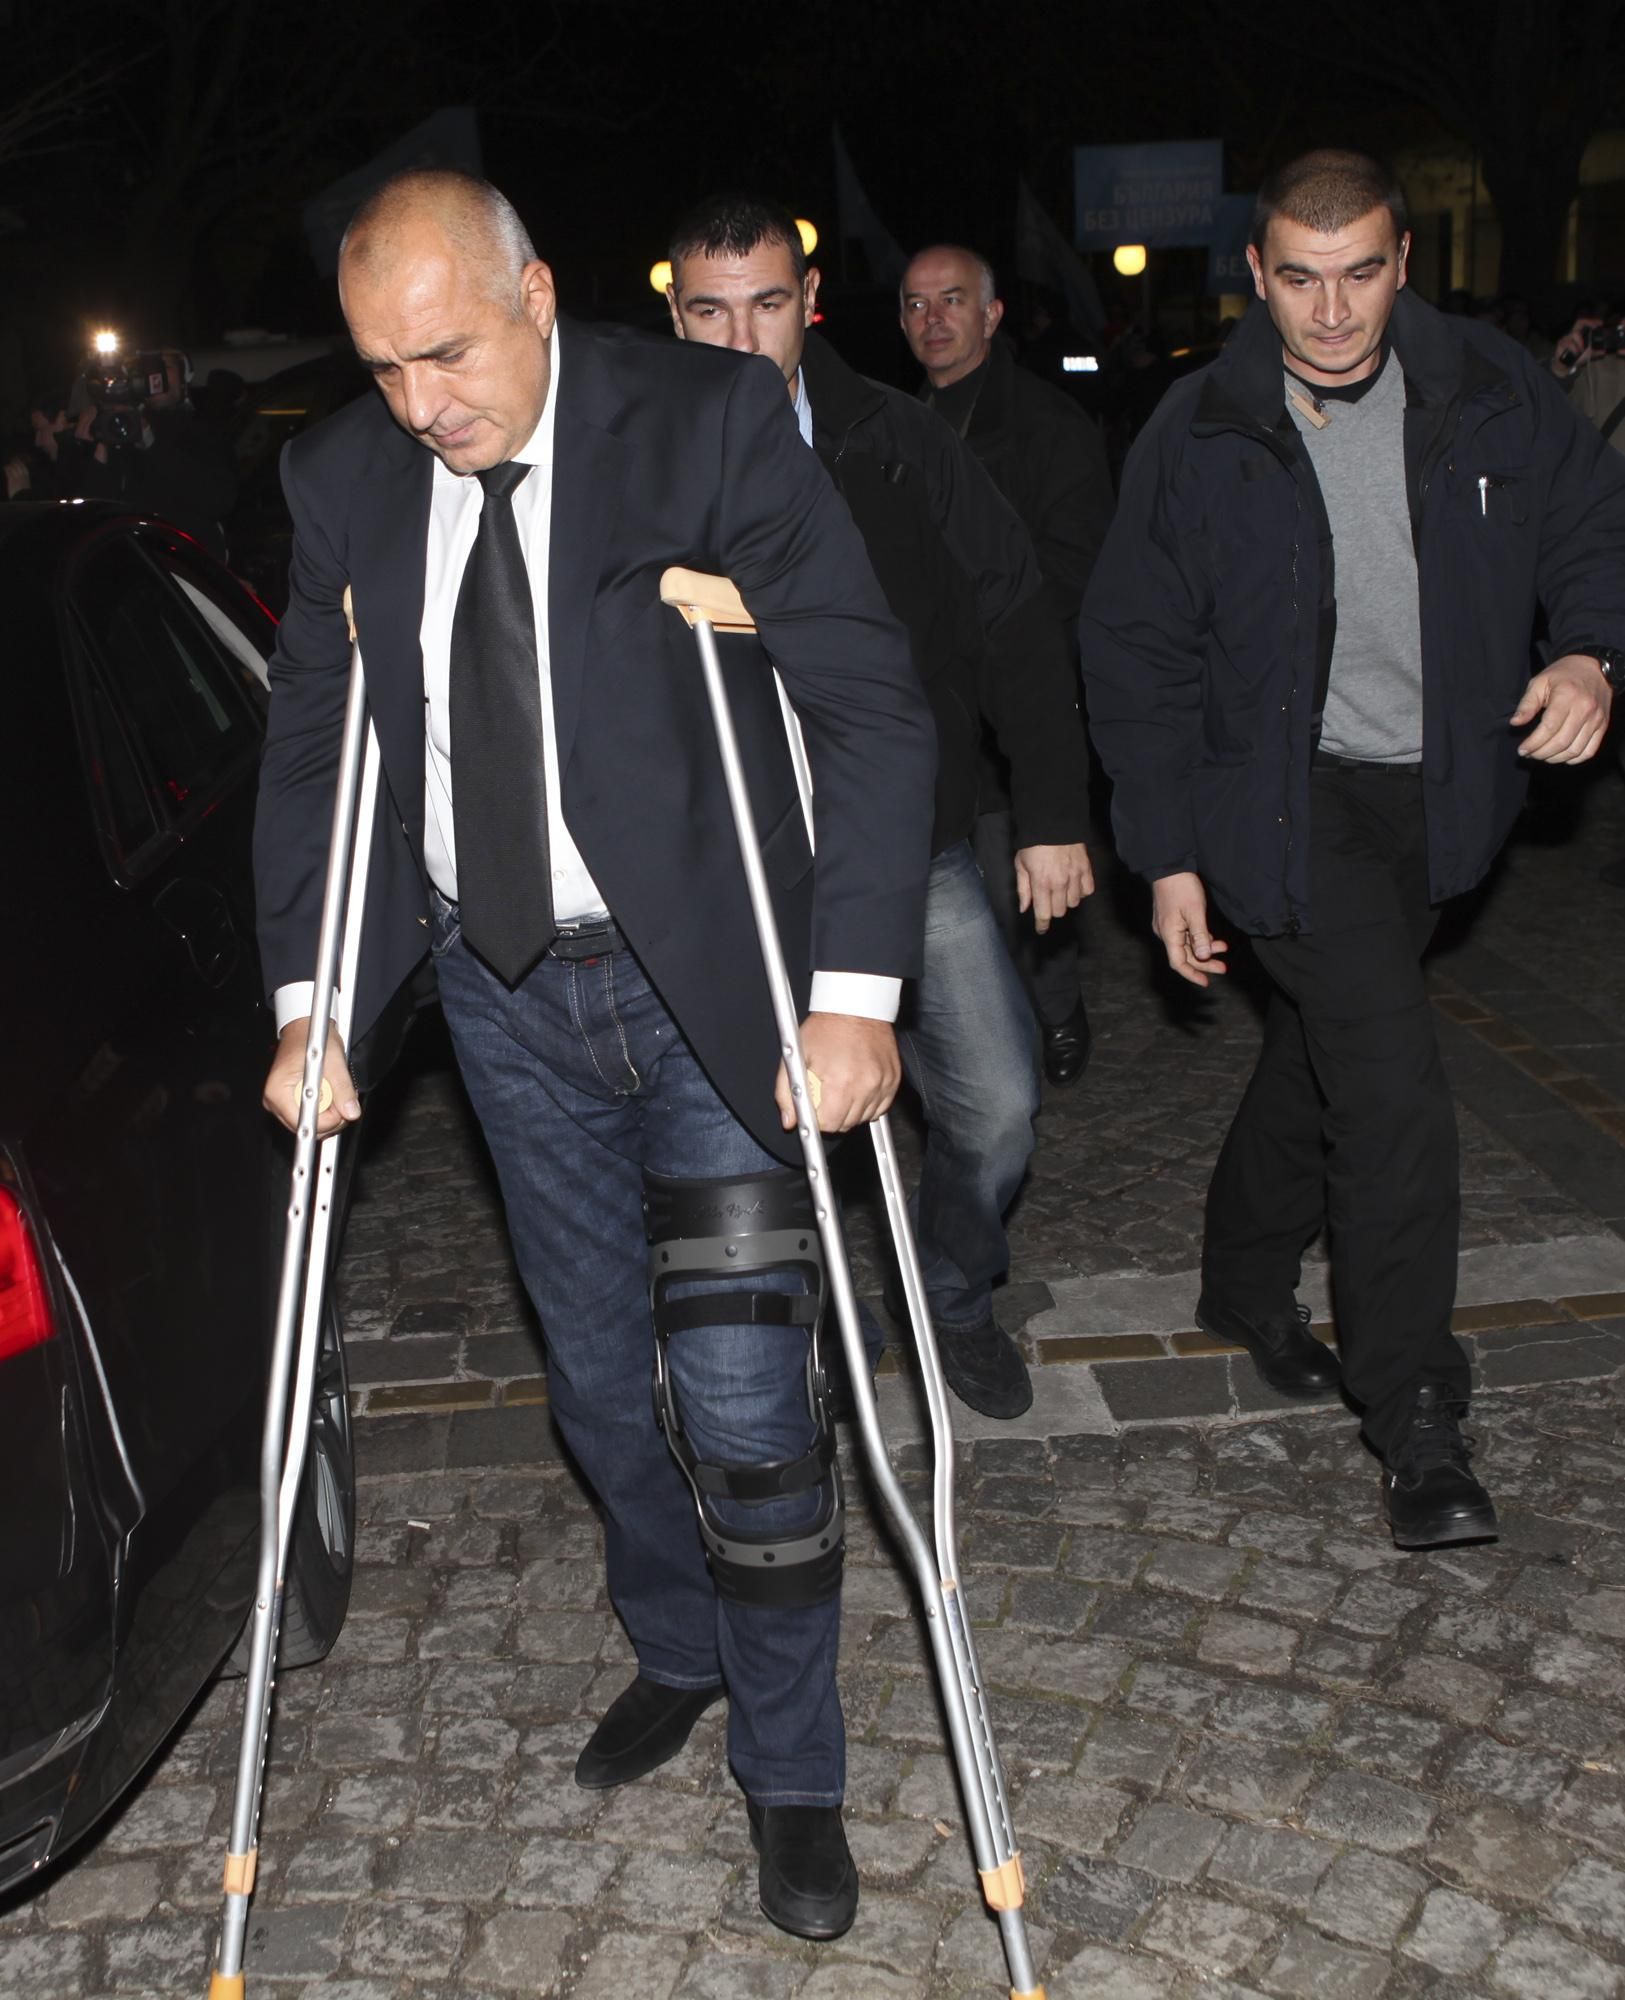 През 2013 г. Бойко Борисов претърпя операция на коляното по спешност